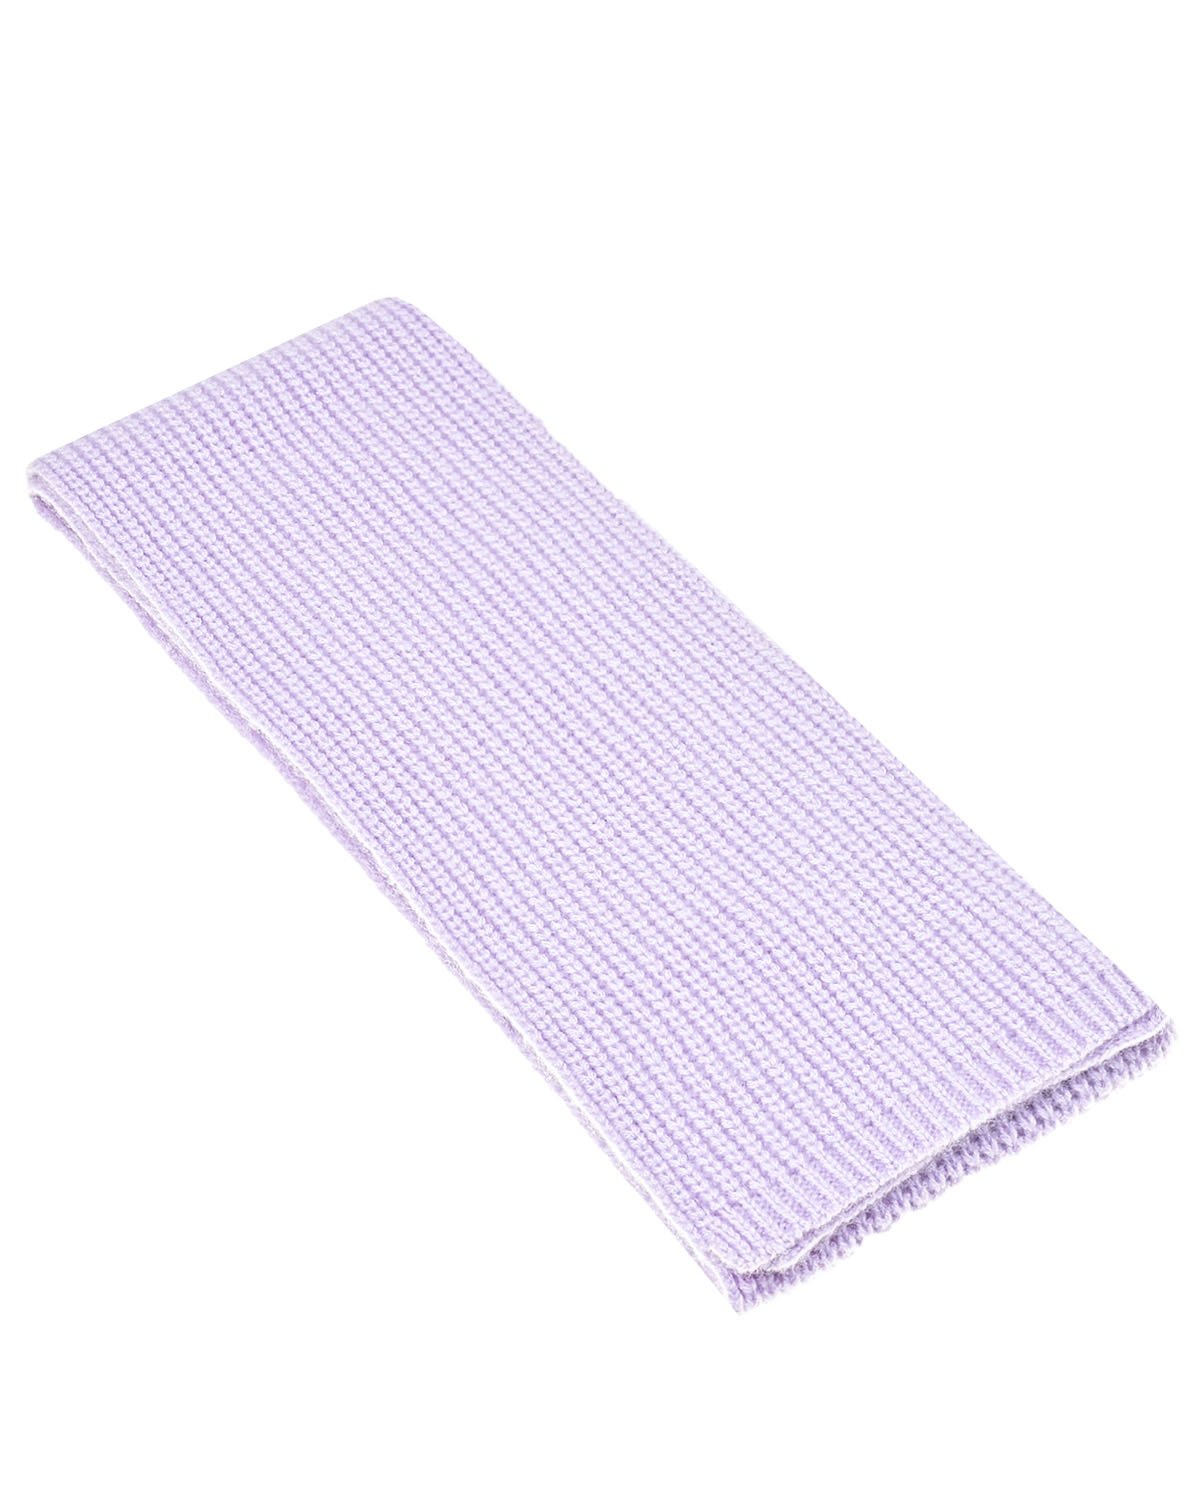 Кашемировый шарф лилового цвета, 162x15 см Yves Salomon детский, размер unica